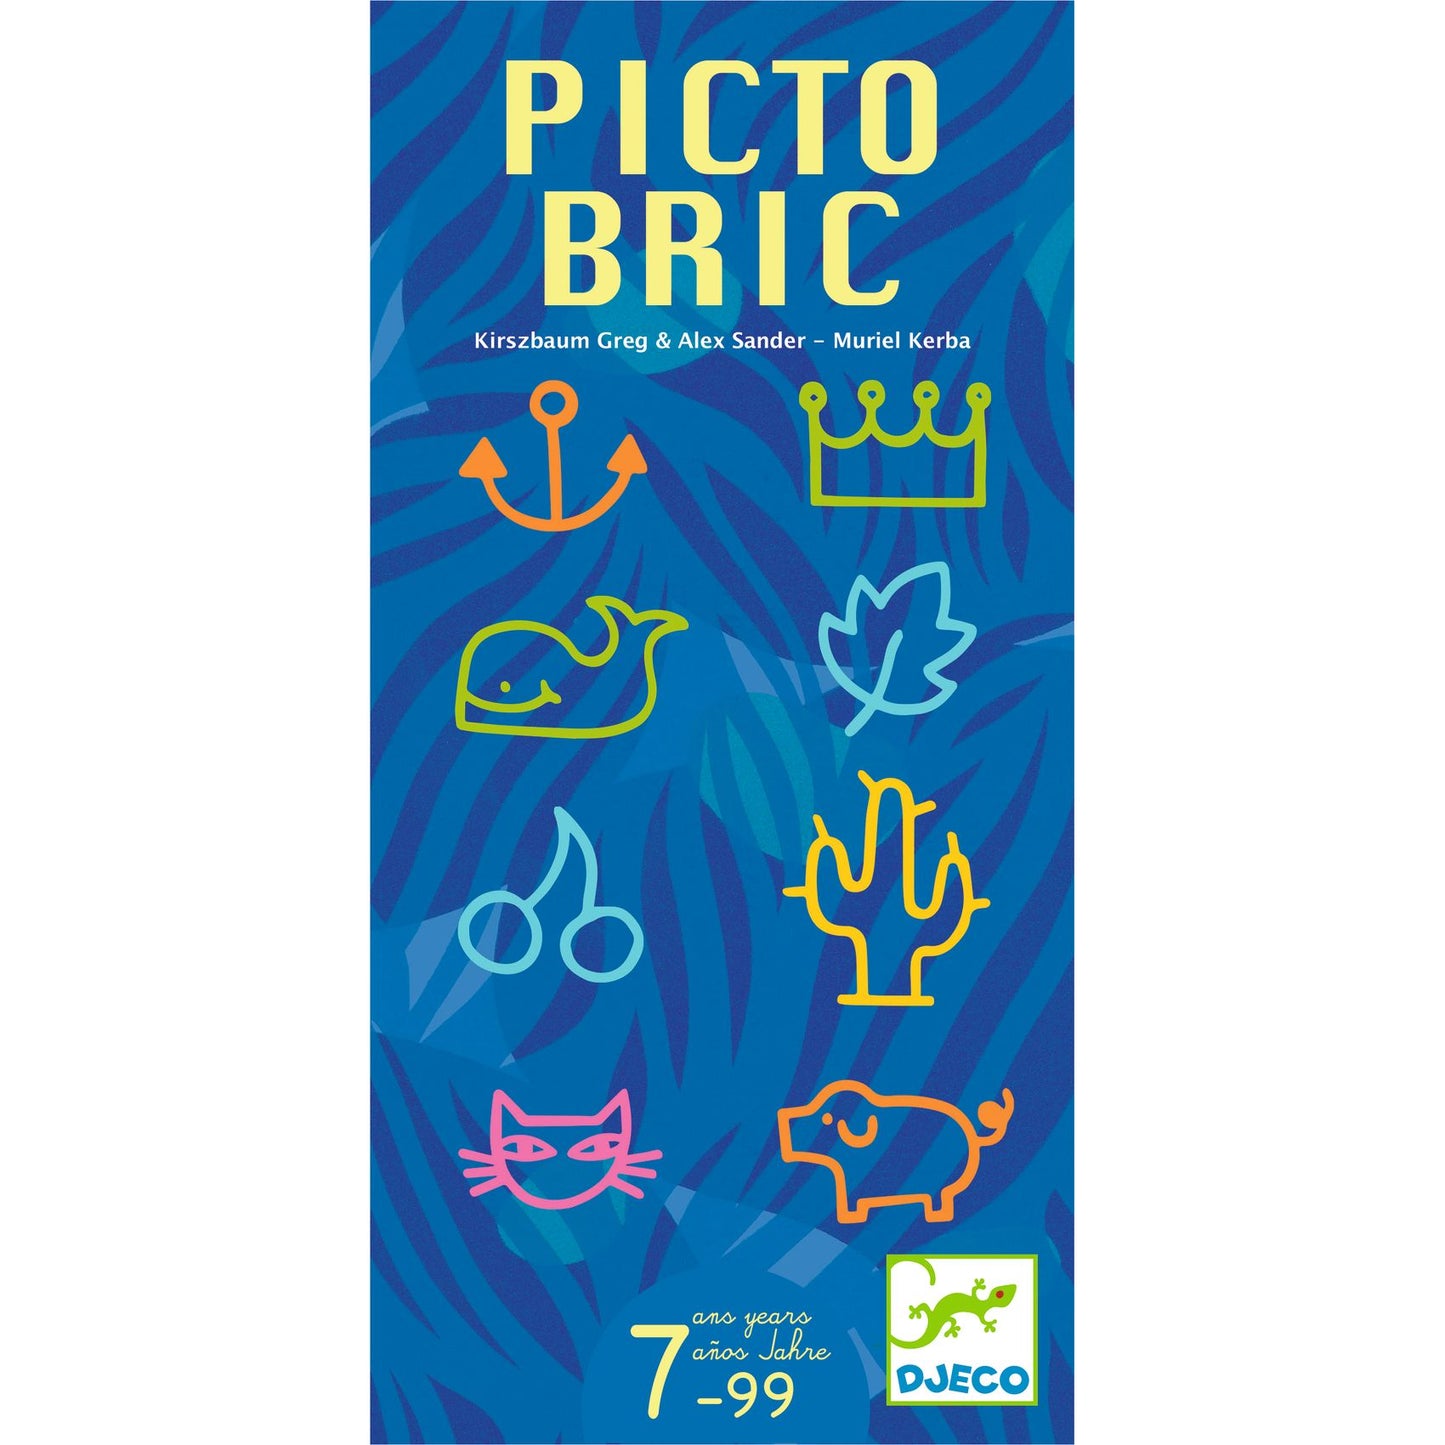 Picto Bric